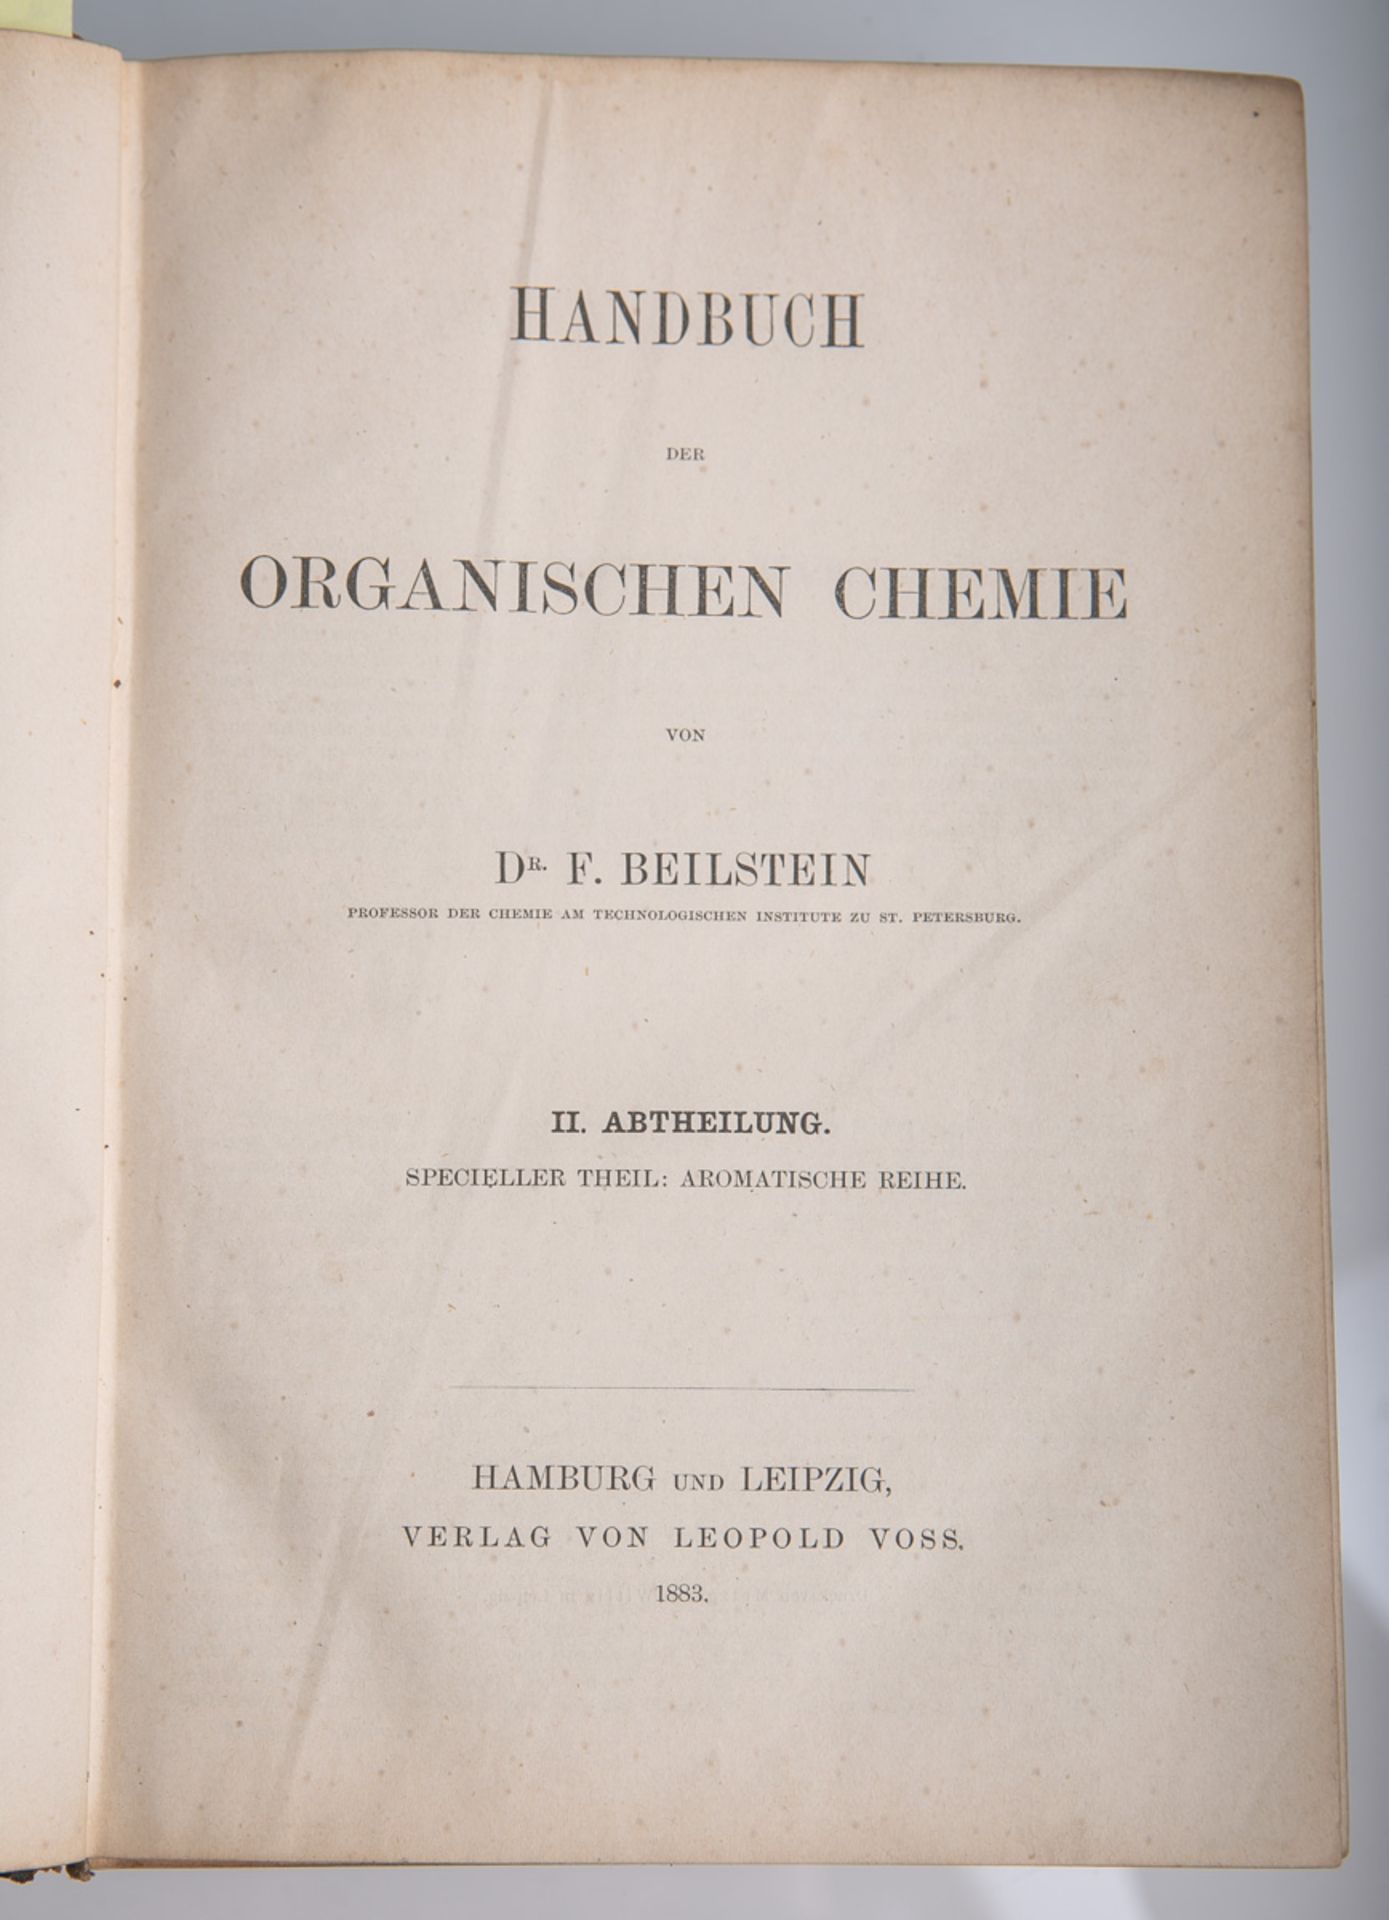 Beilstein, F. Dr., "Handbuch der organischen Chemie", 2. Abteilung